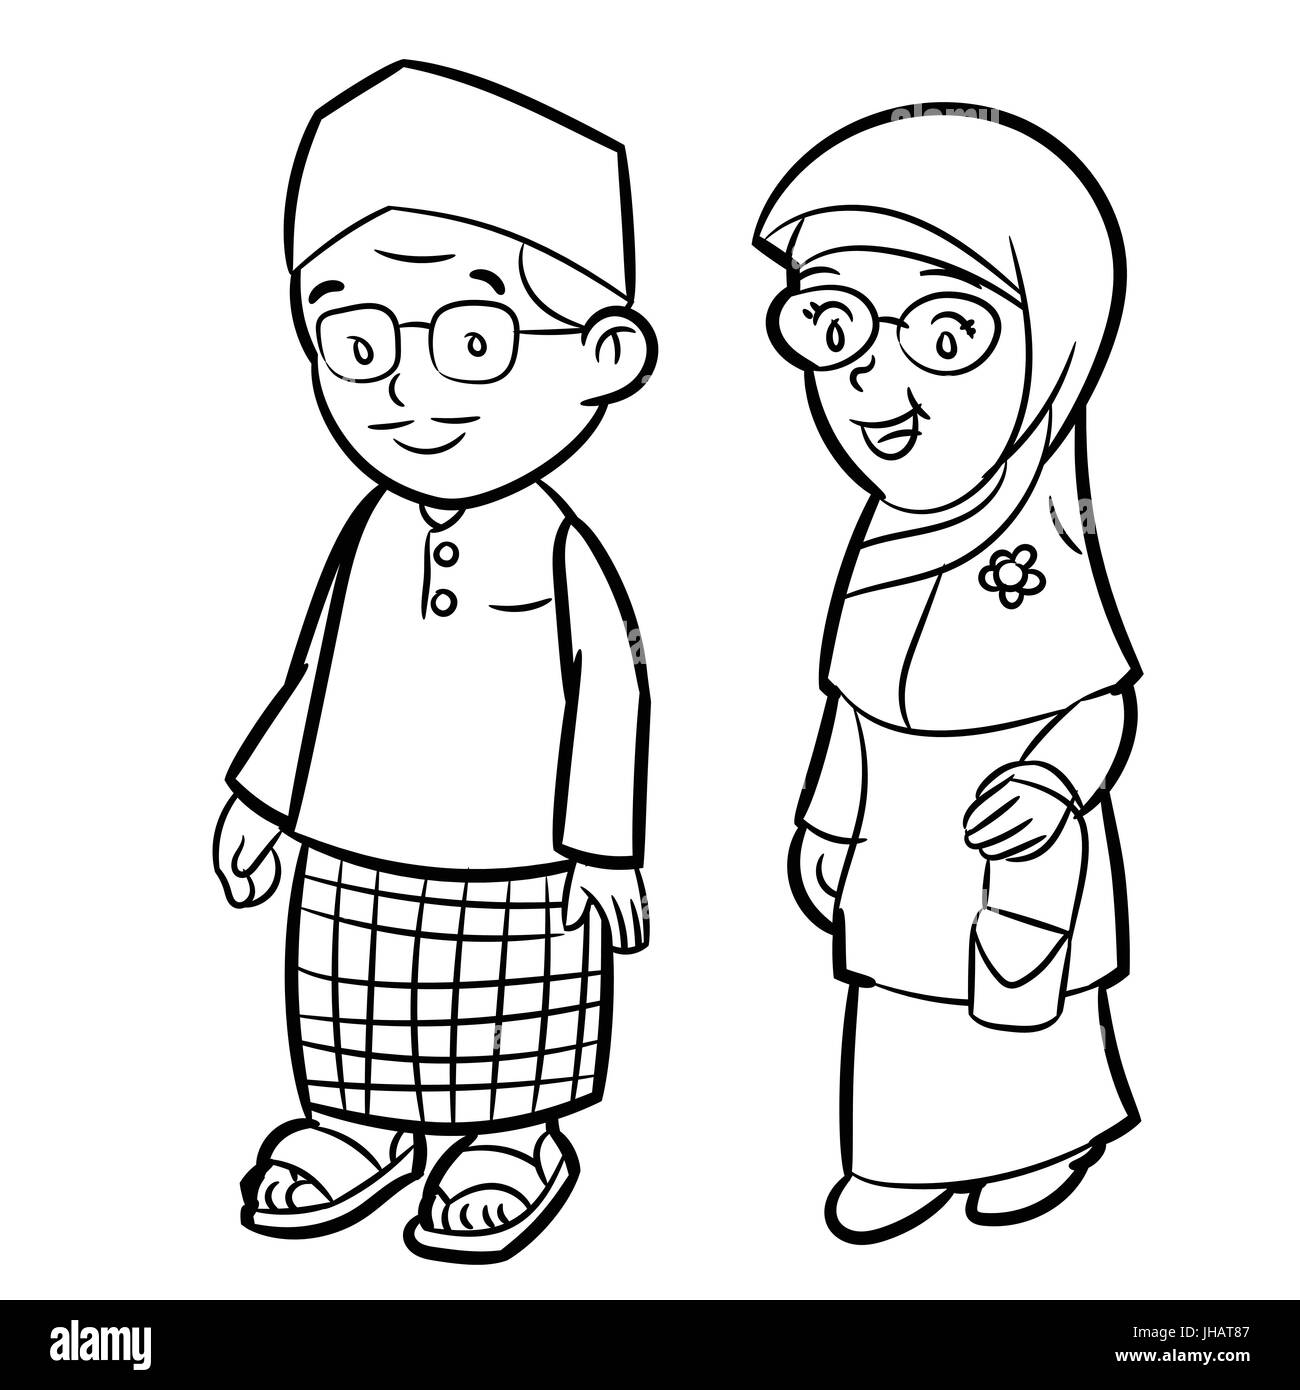 Hand gezeichnete Skizze des Erwachsenen Malay Charakter Cartoon isoliert, schwarz / weiß-Cartoon-Vektor-Illustration für Coloring Book - Linie gezeichnet Vektor Stock Vektor